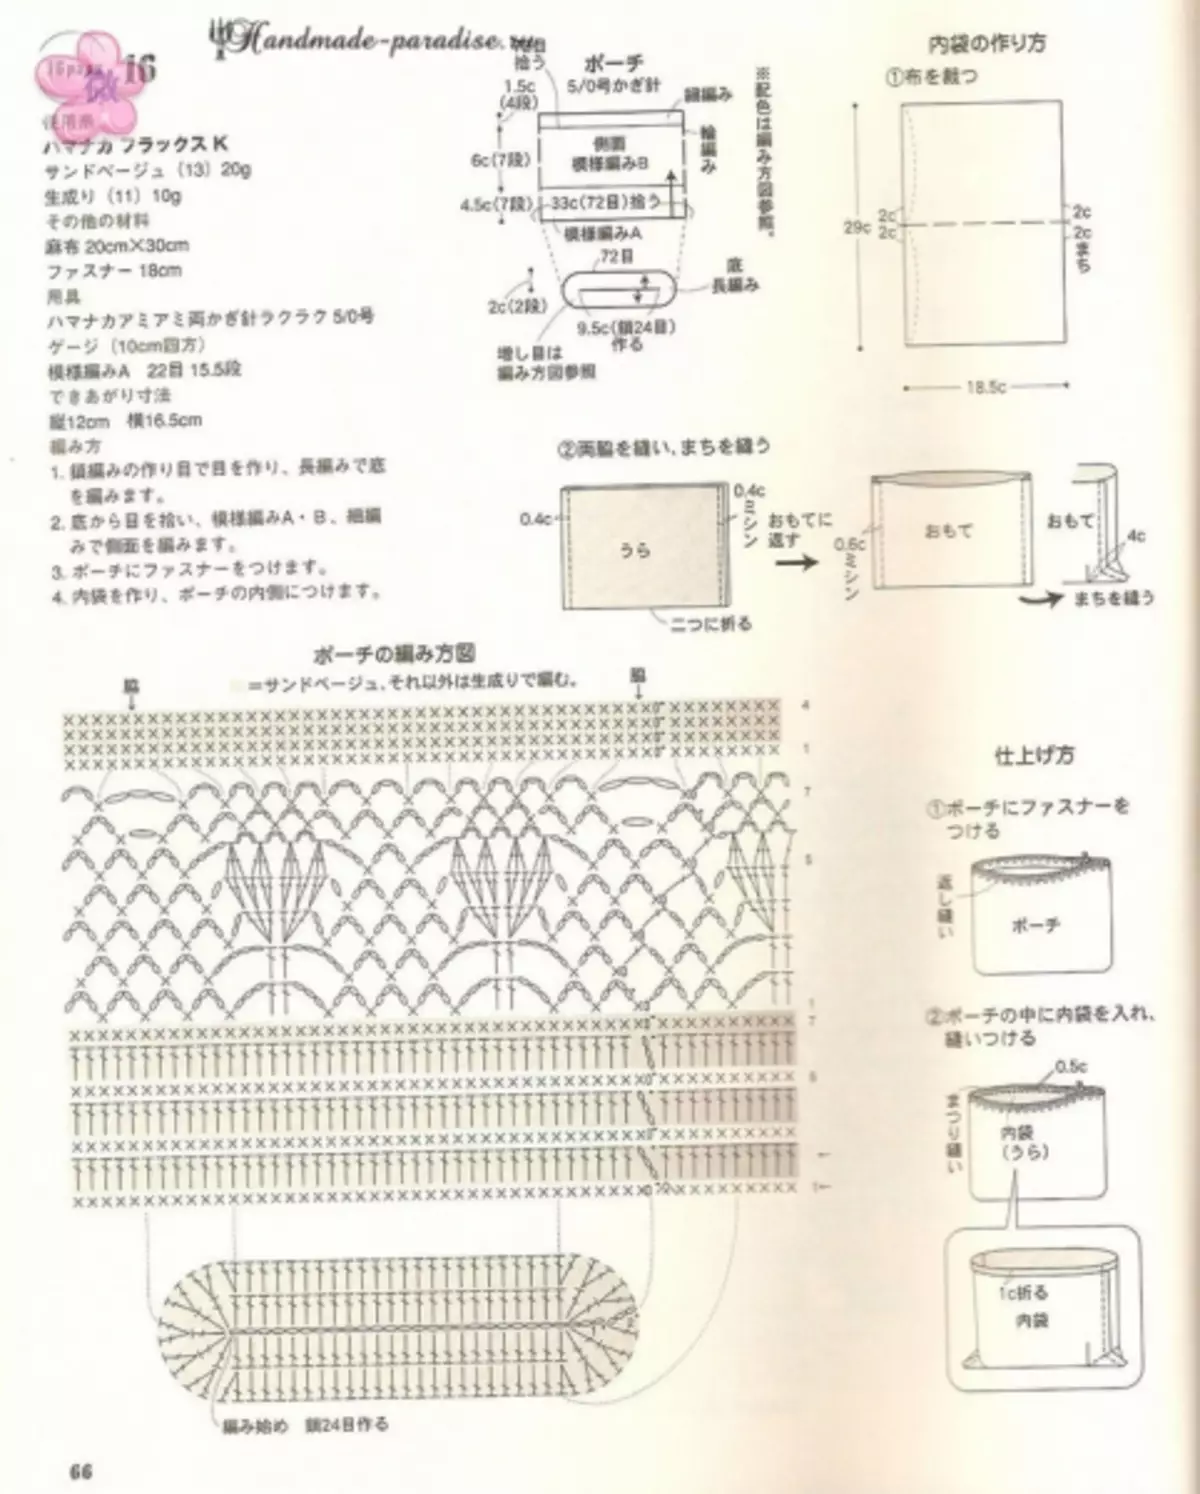 Accesorios de verano de crochet. Revista japonesa con esquemas.